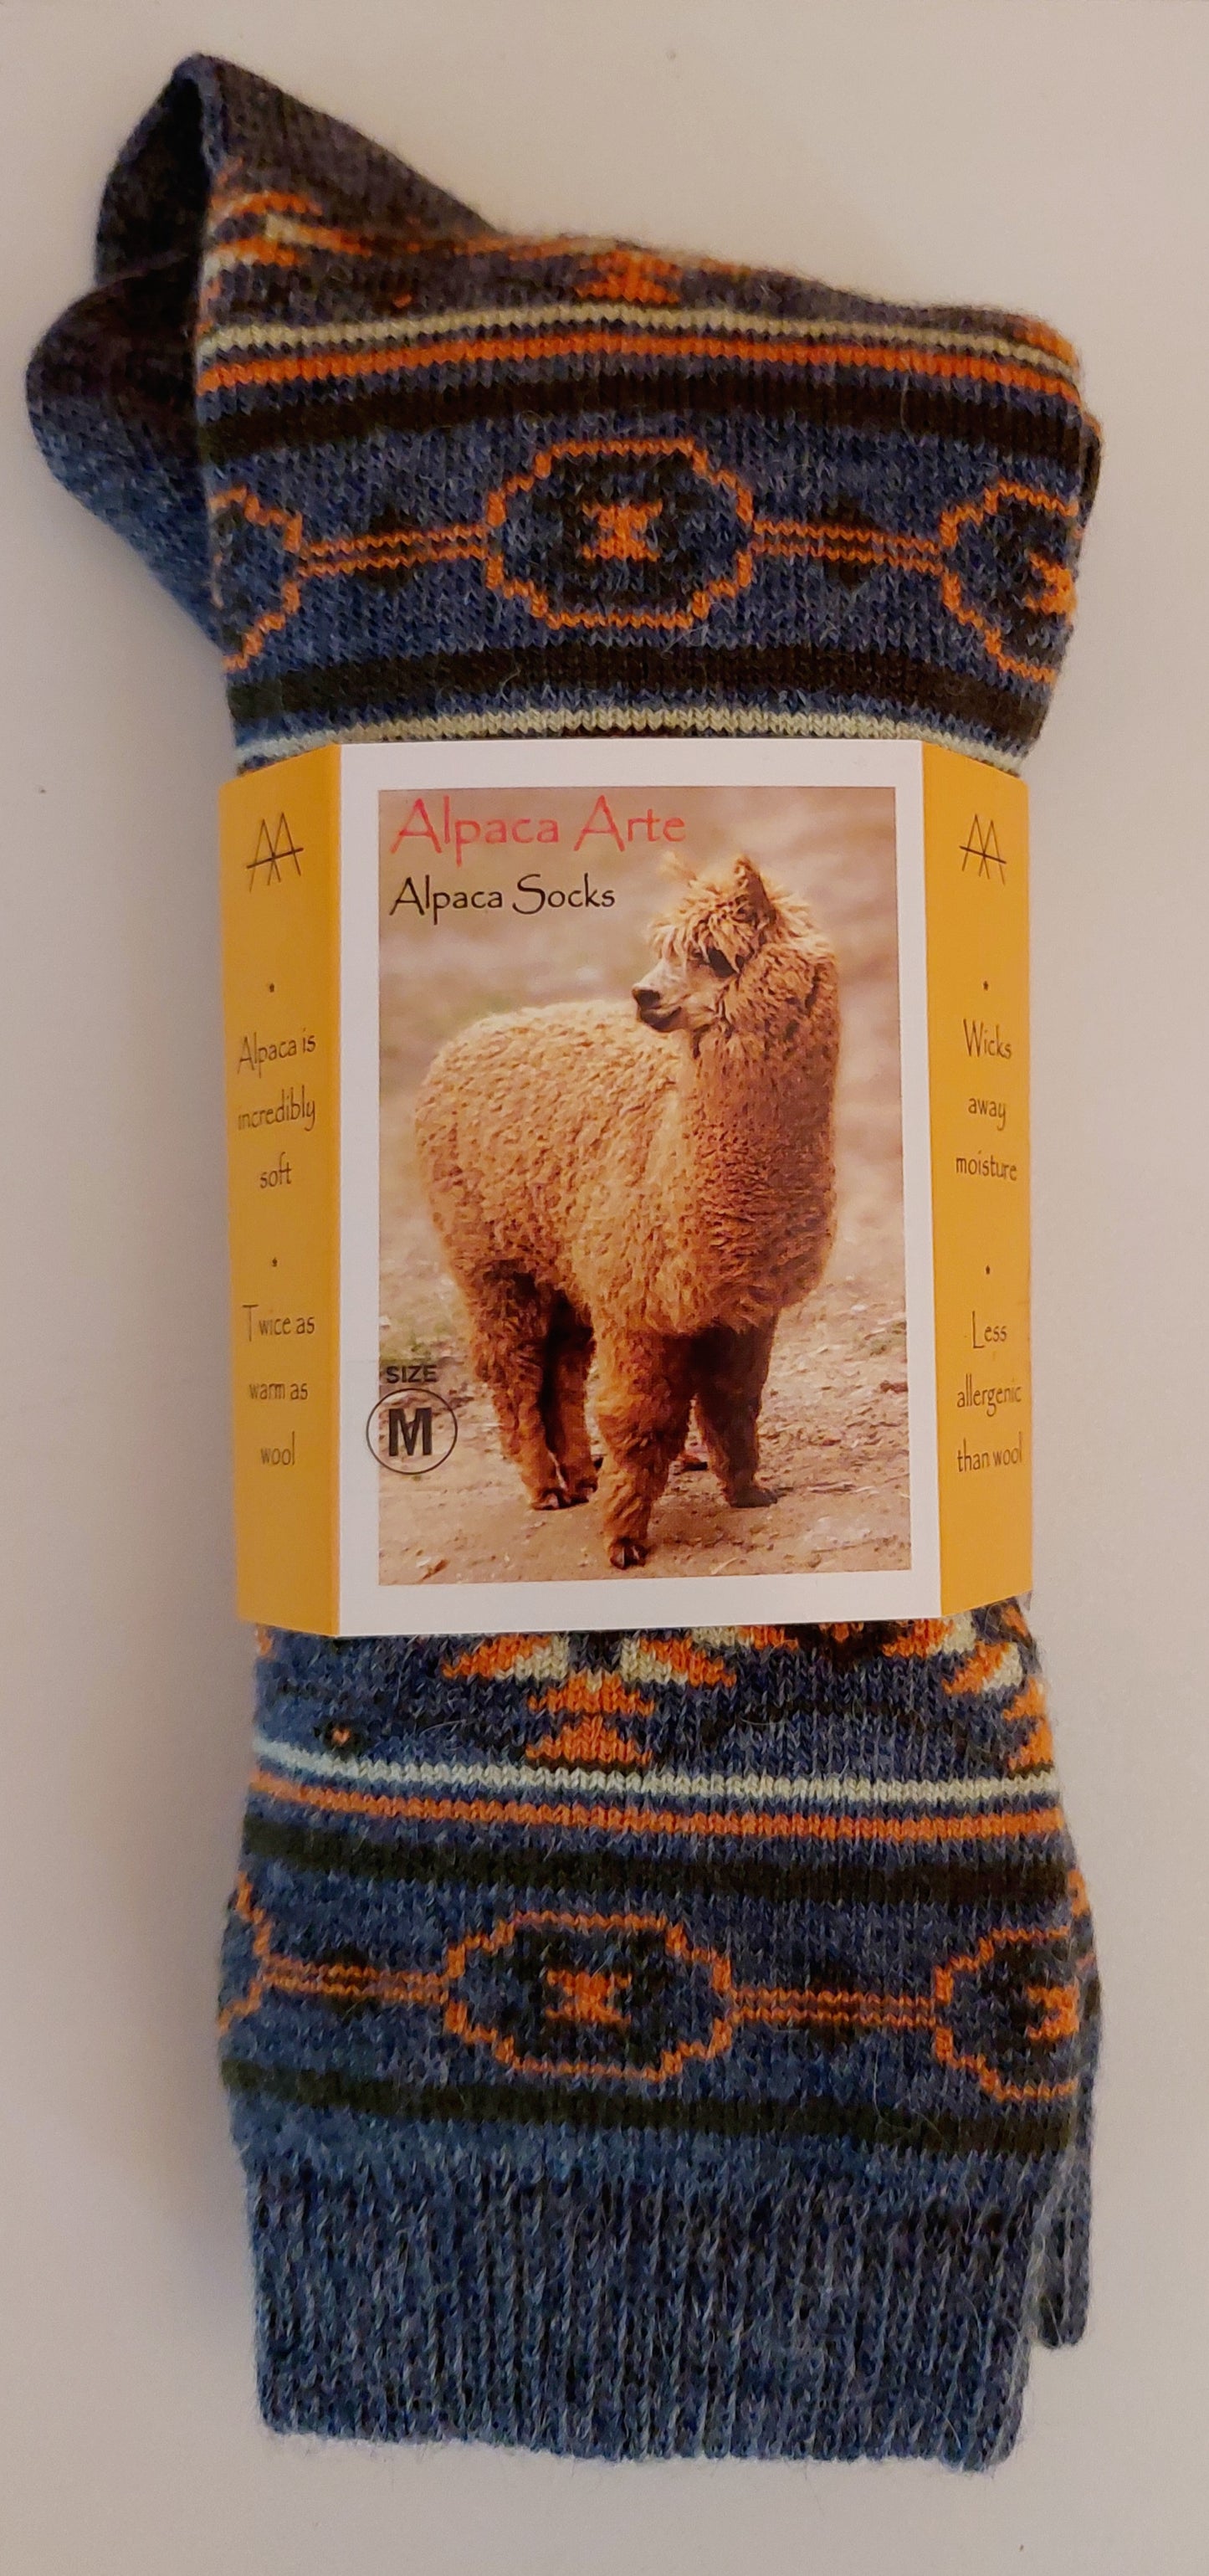 Alpaca Sock-Santa Fe